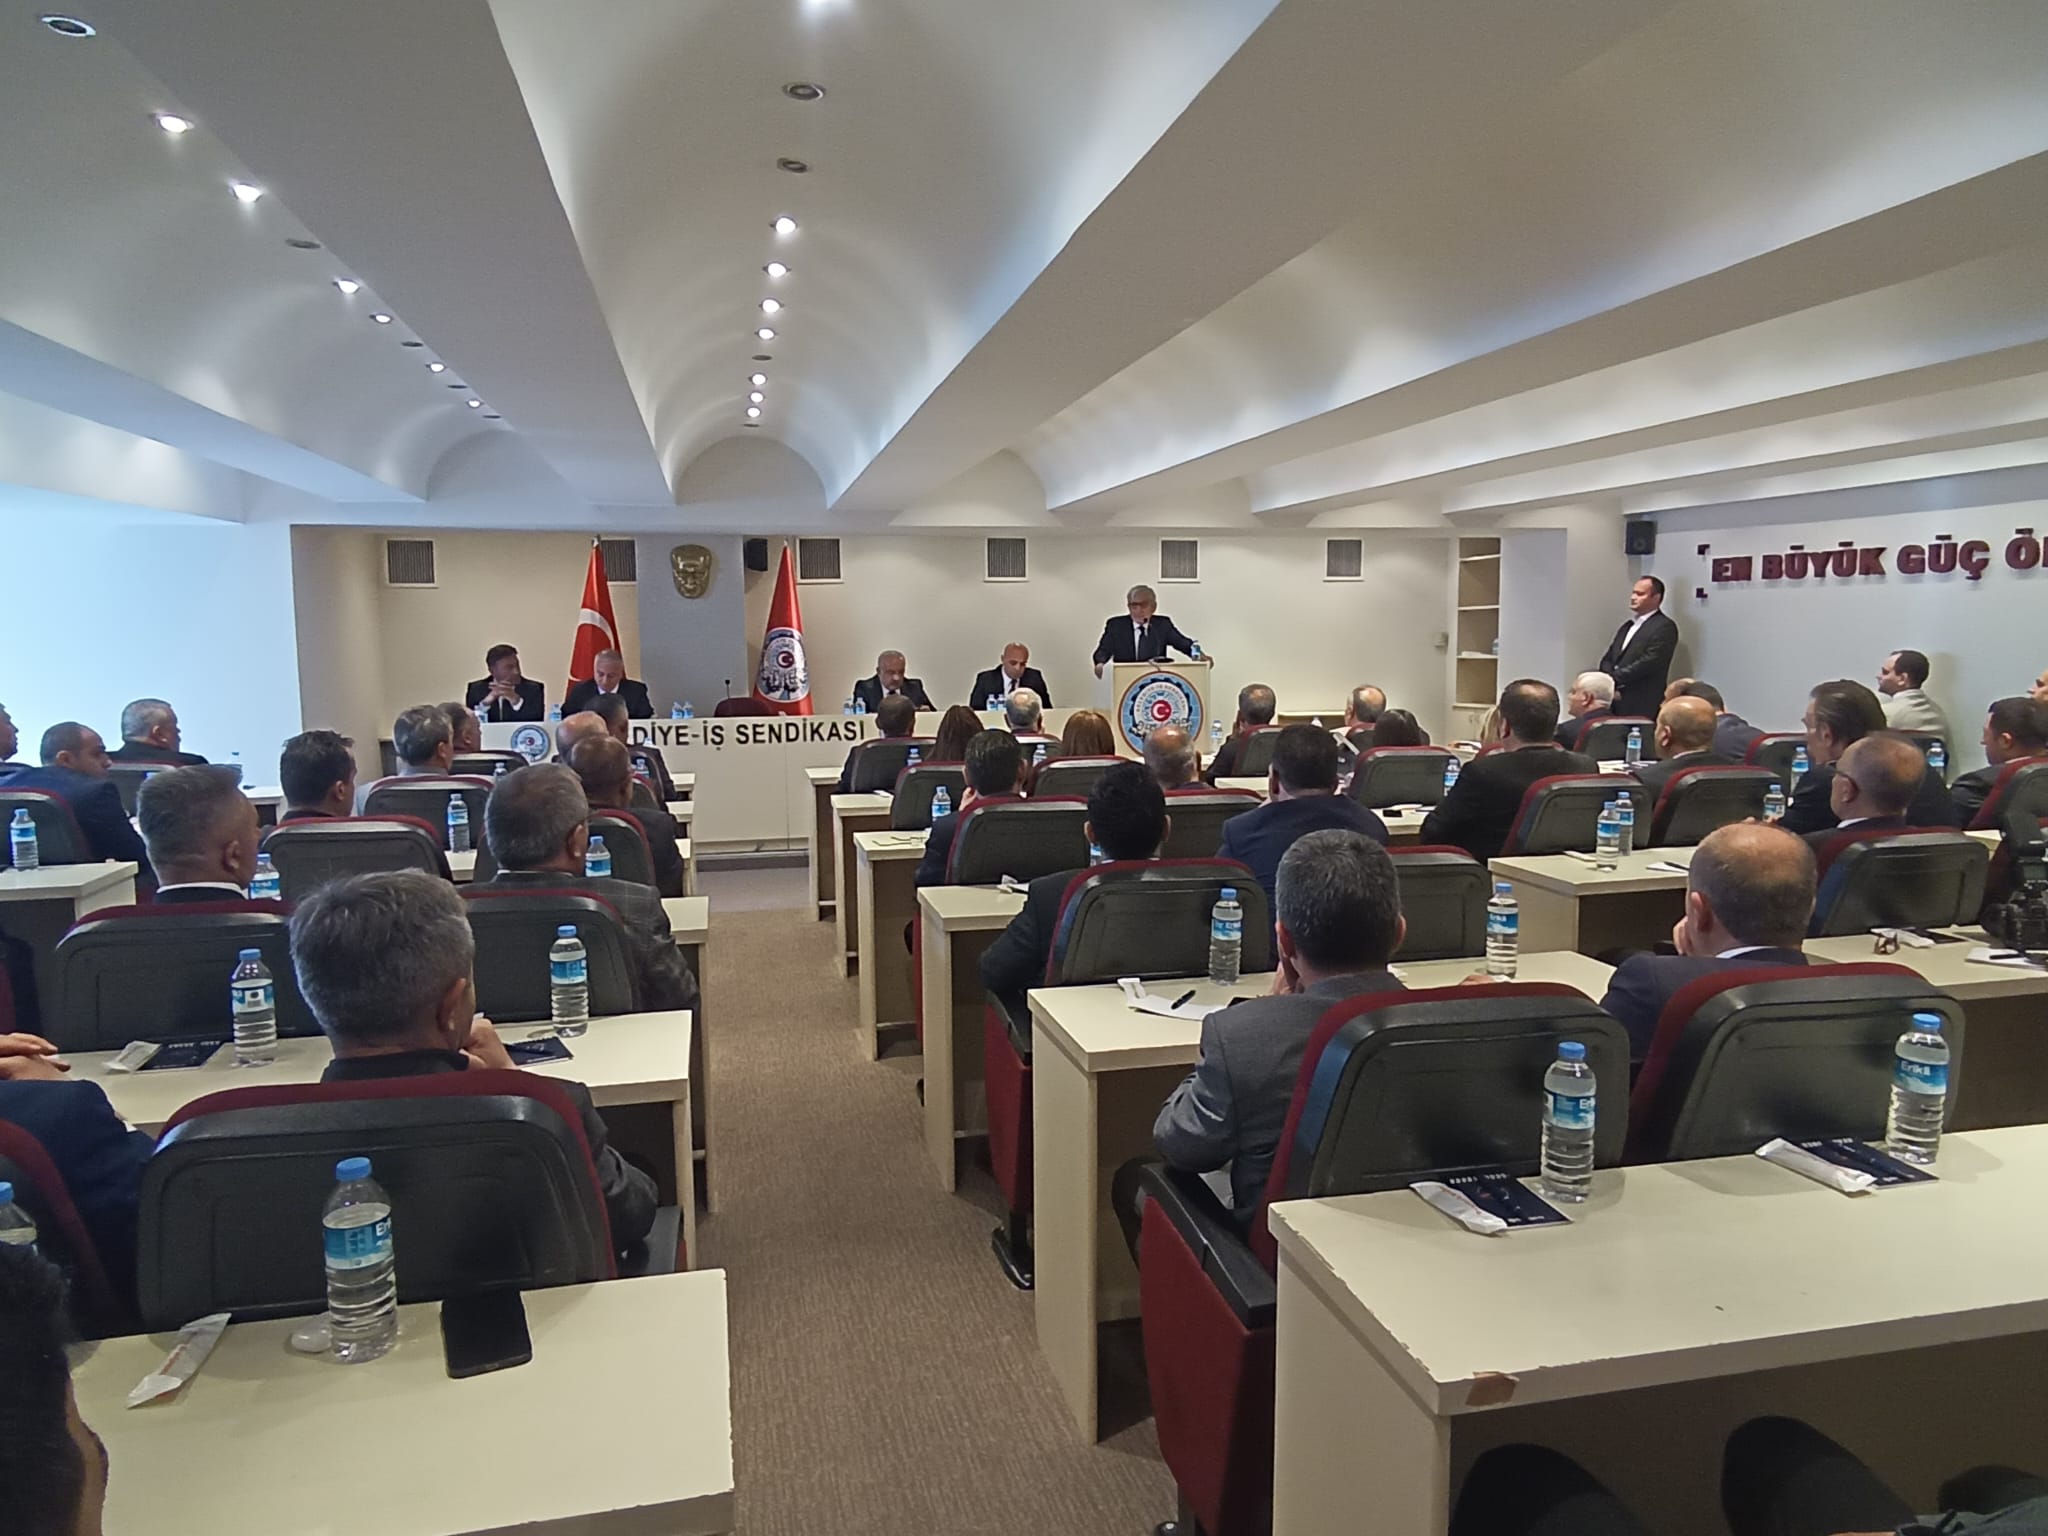 Belediye Iş Sendikası Ankara'da toplandı